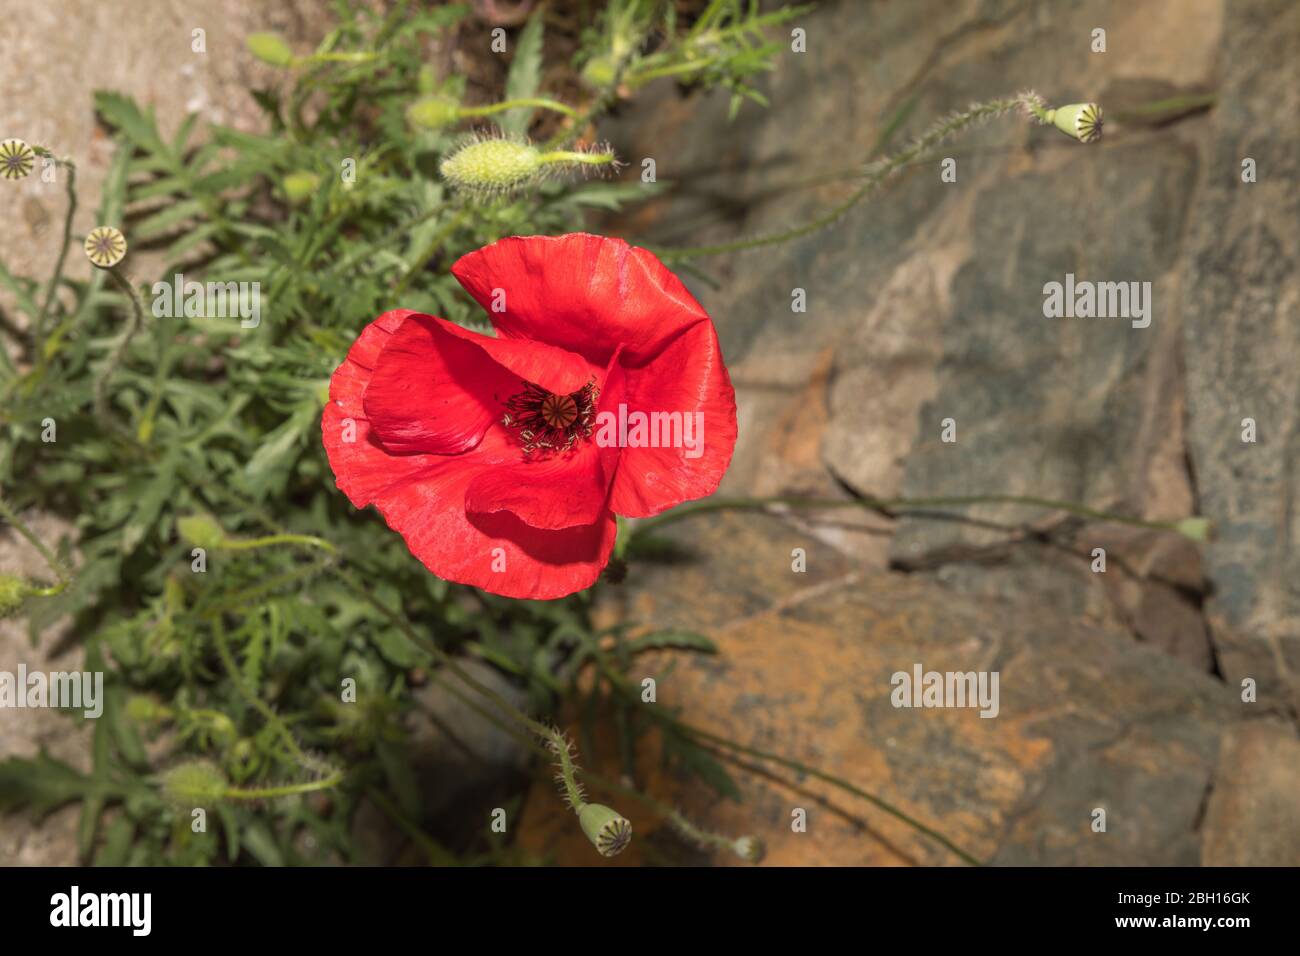 Tête de fleur de pavot rouge unique en pleine fleur. Image de stock. Banque D'Images